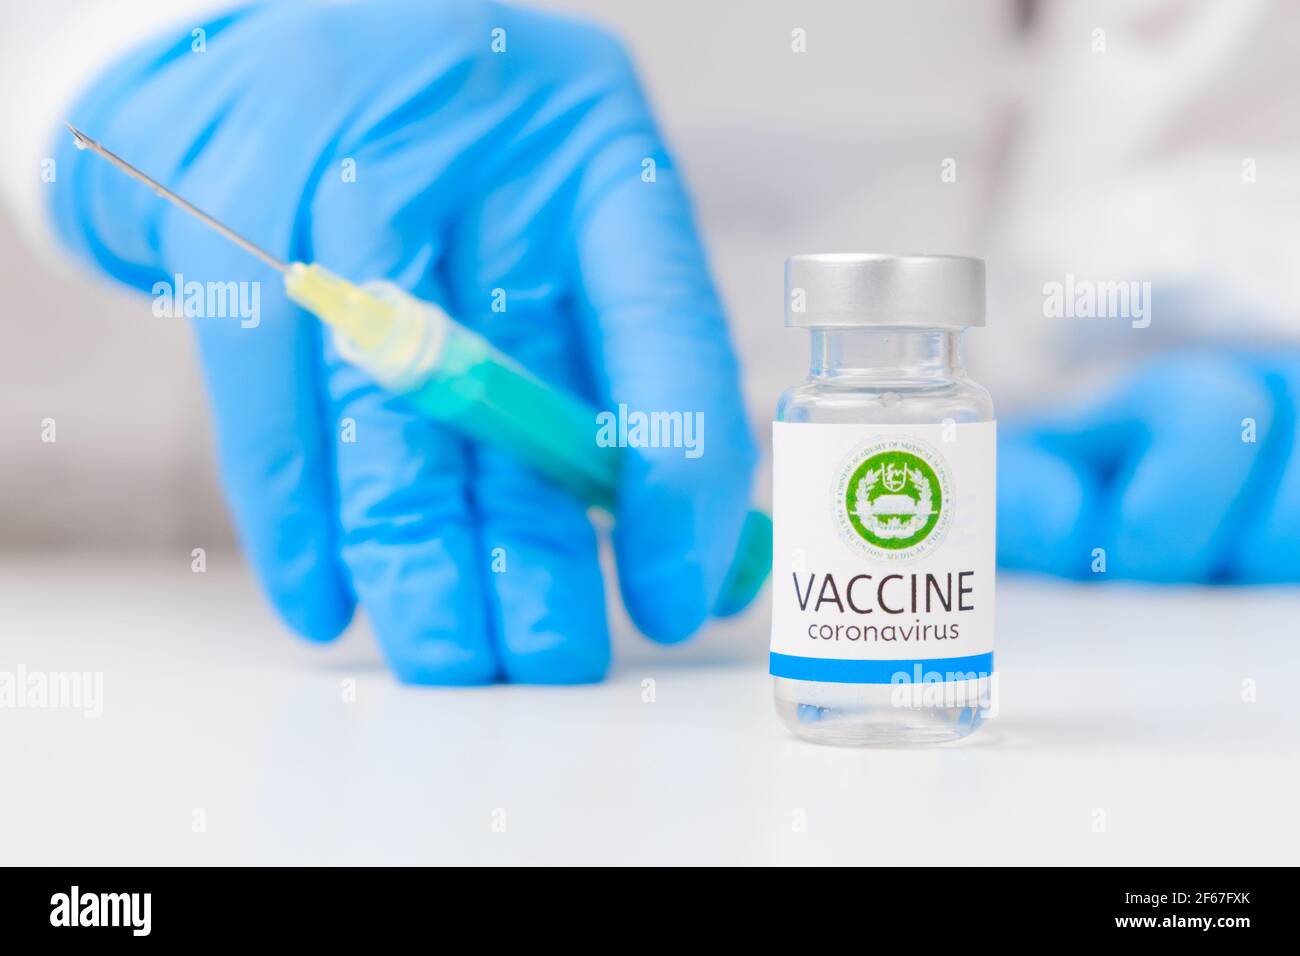 Accademia cinese di scienze mediche vaccino contro il coronavirus e siringa per l'iniezione in mano operatore sanitario in guanti di gomma e. tuta protettiva Foto Stock